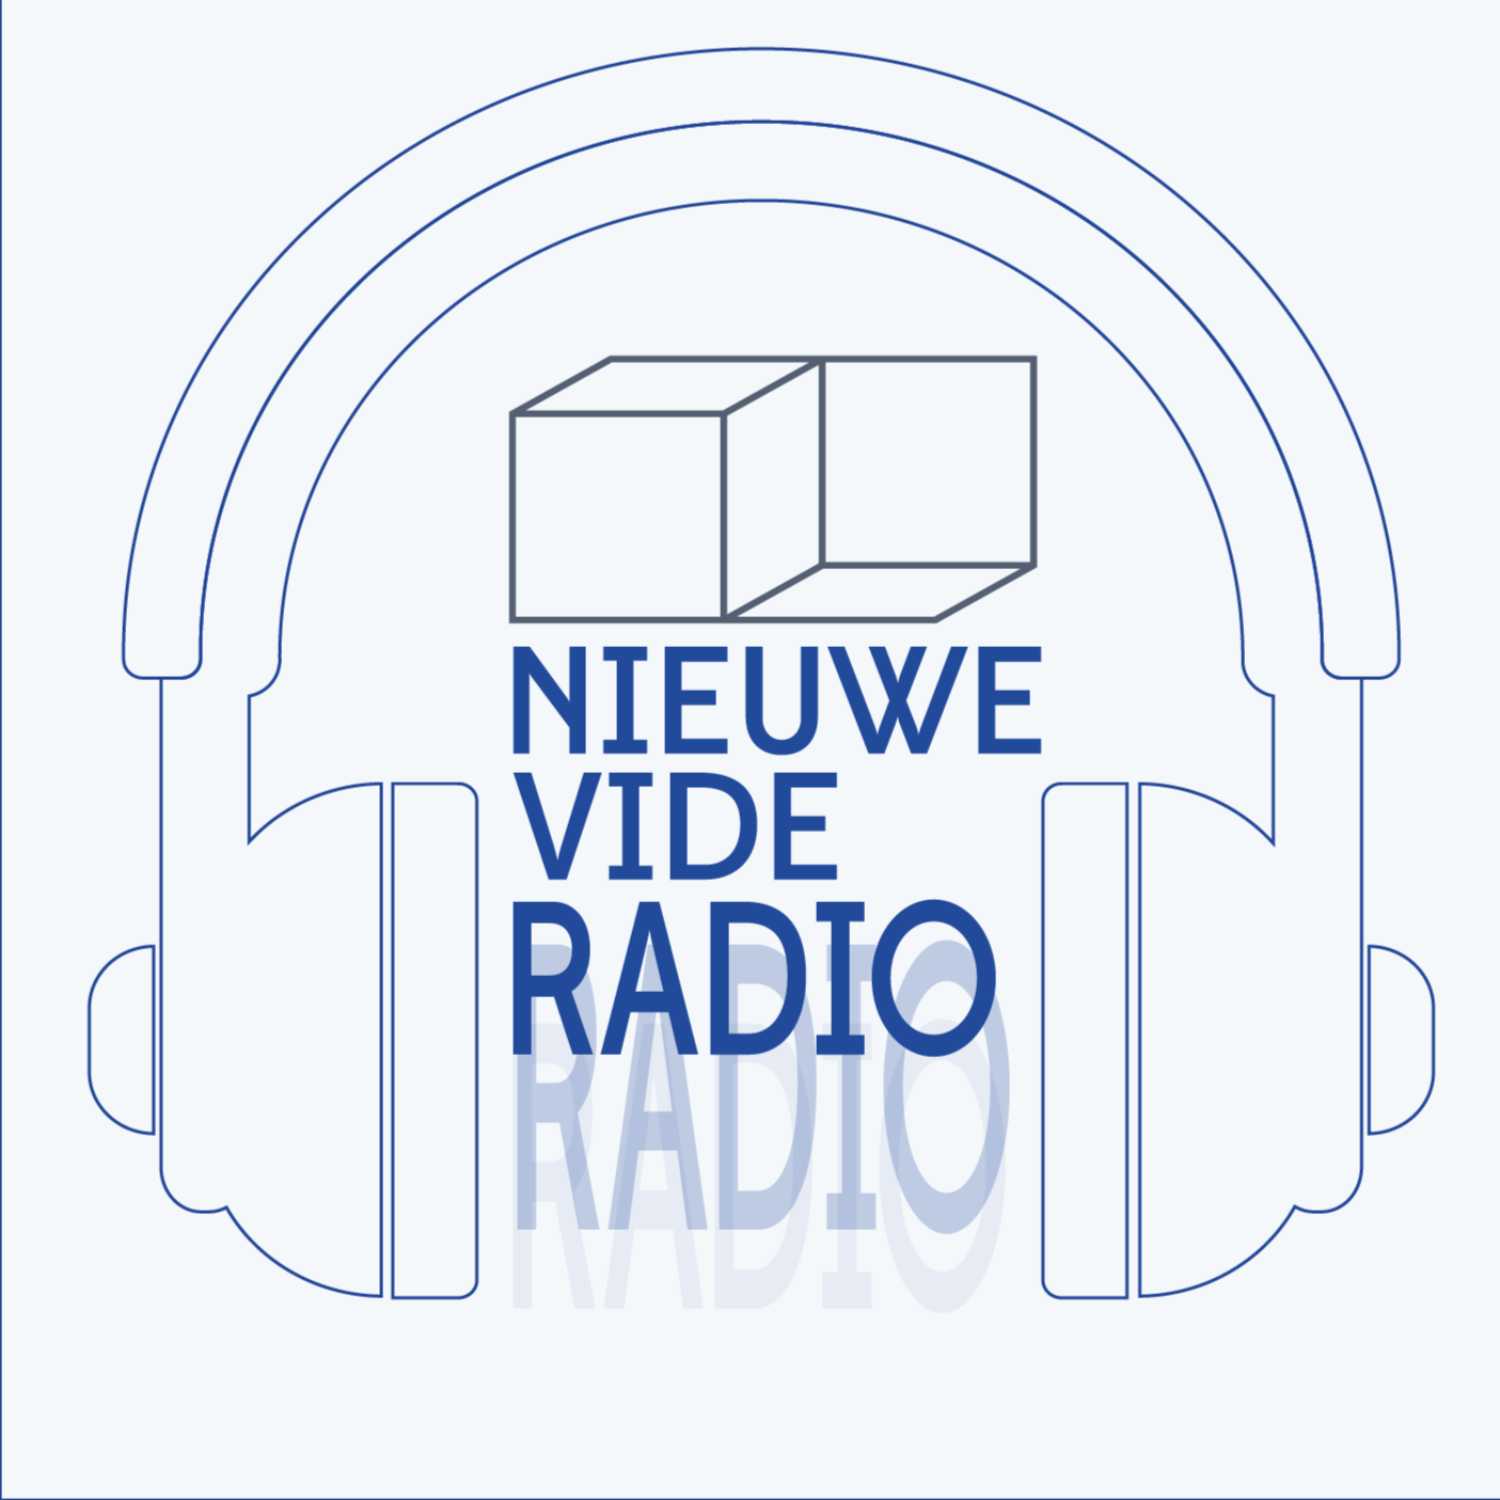 Nieuwe Vide Radio